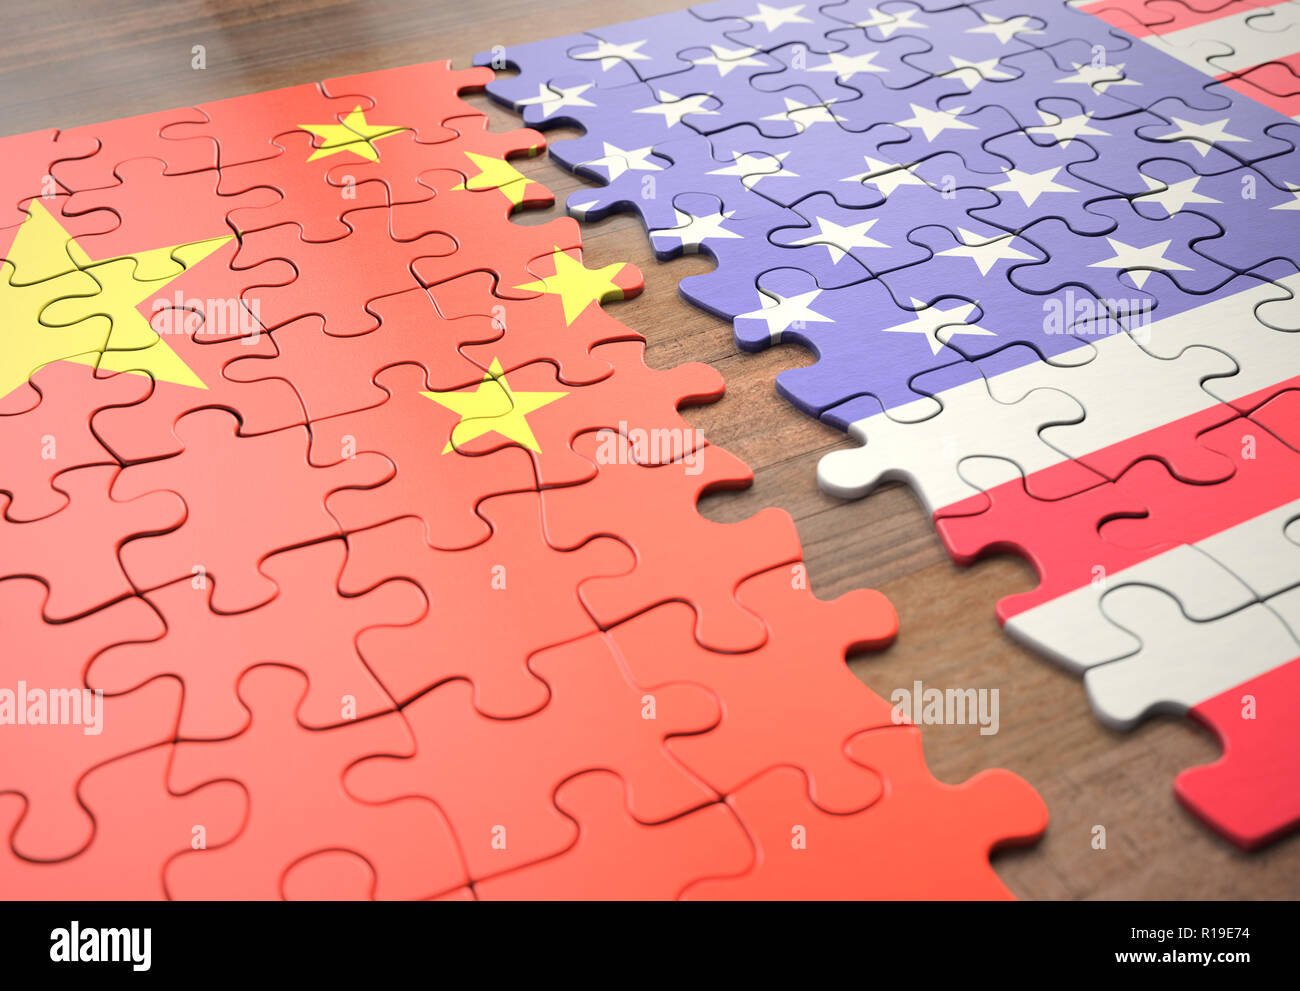 Dos naciones uniendo en un juego de puzzle que representa la unión, la paz, el comercio, el acuerdo social y humano. Foto de stock